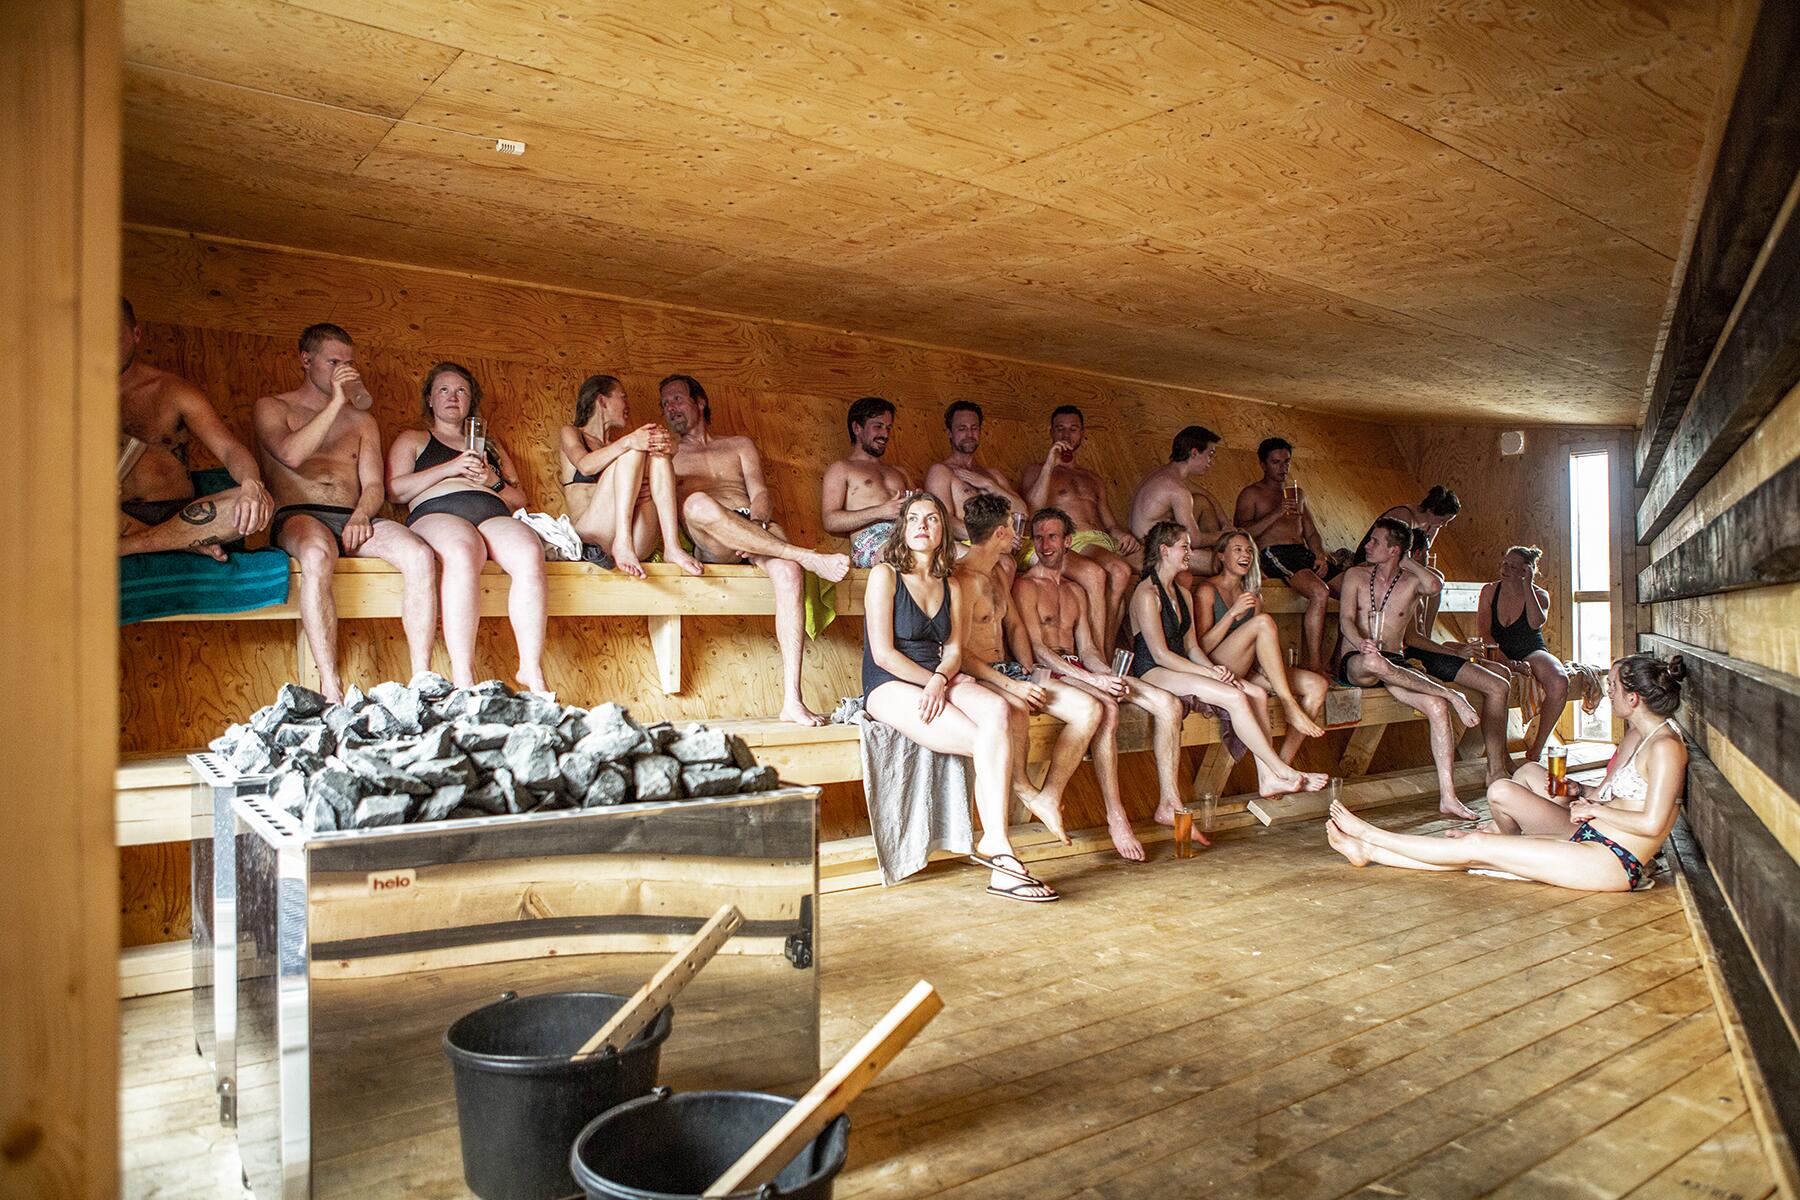 Naked Sauna